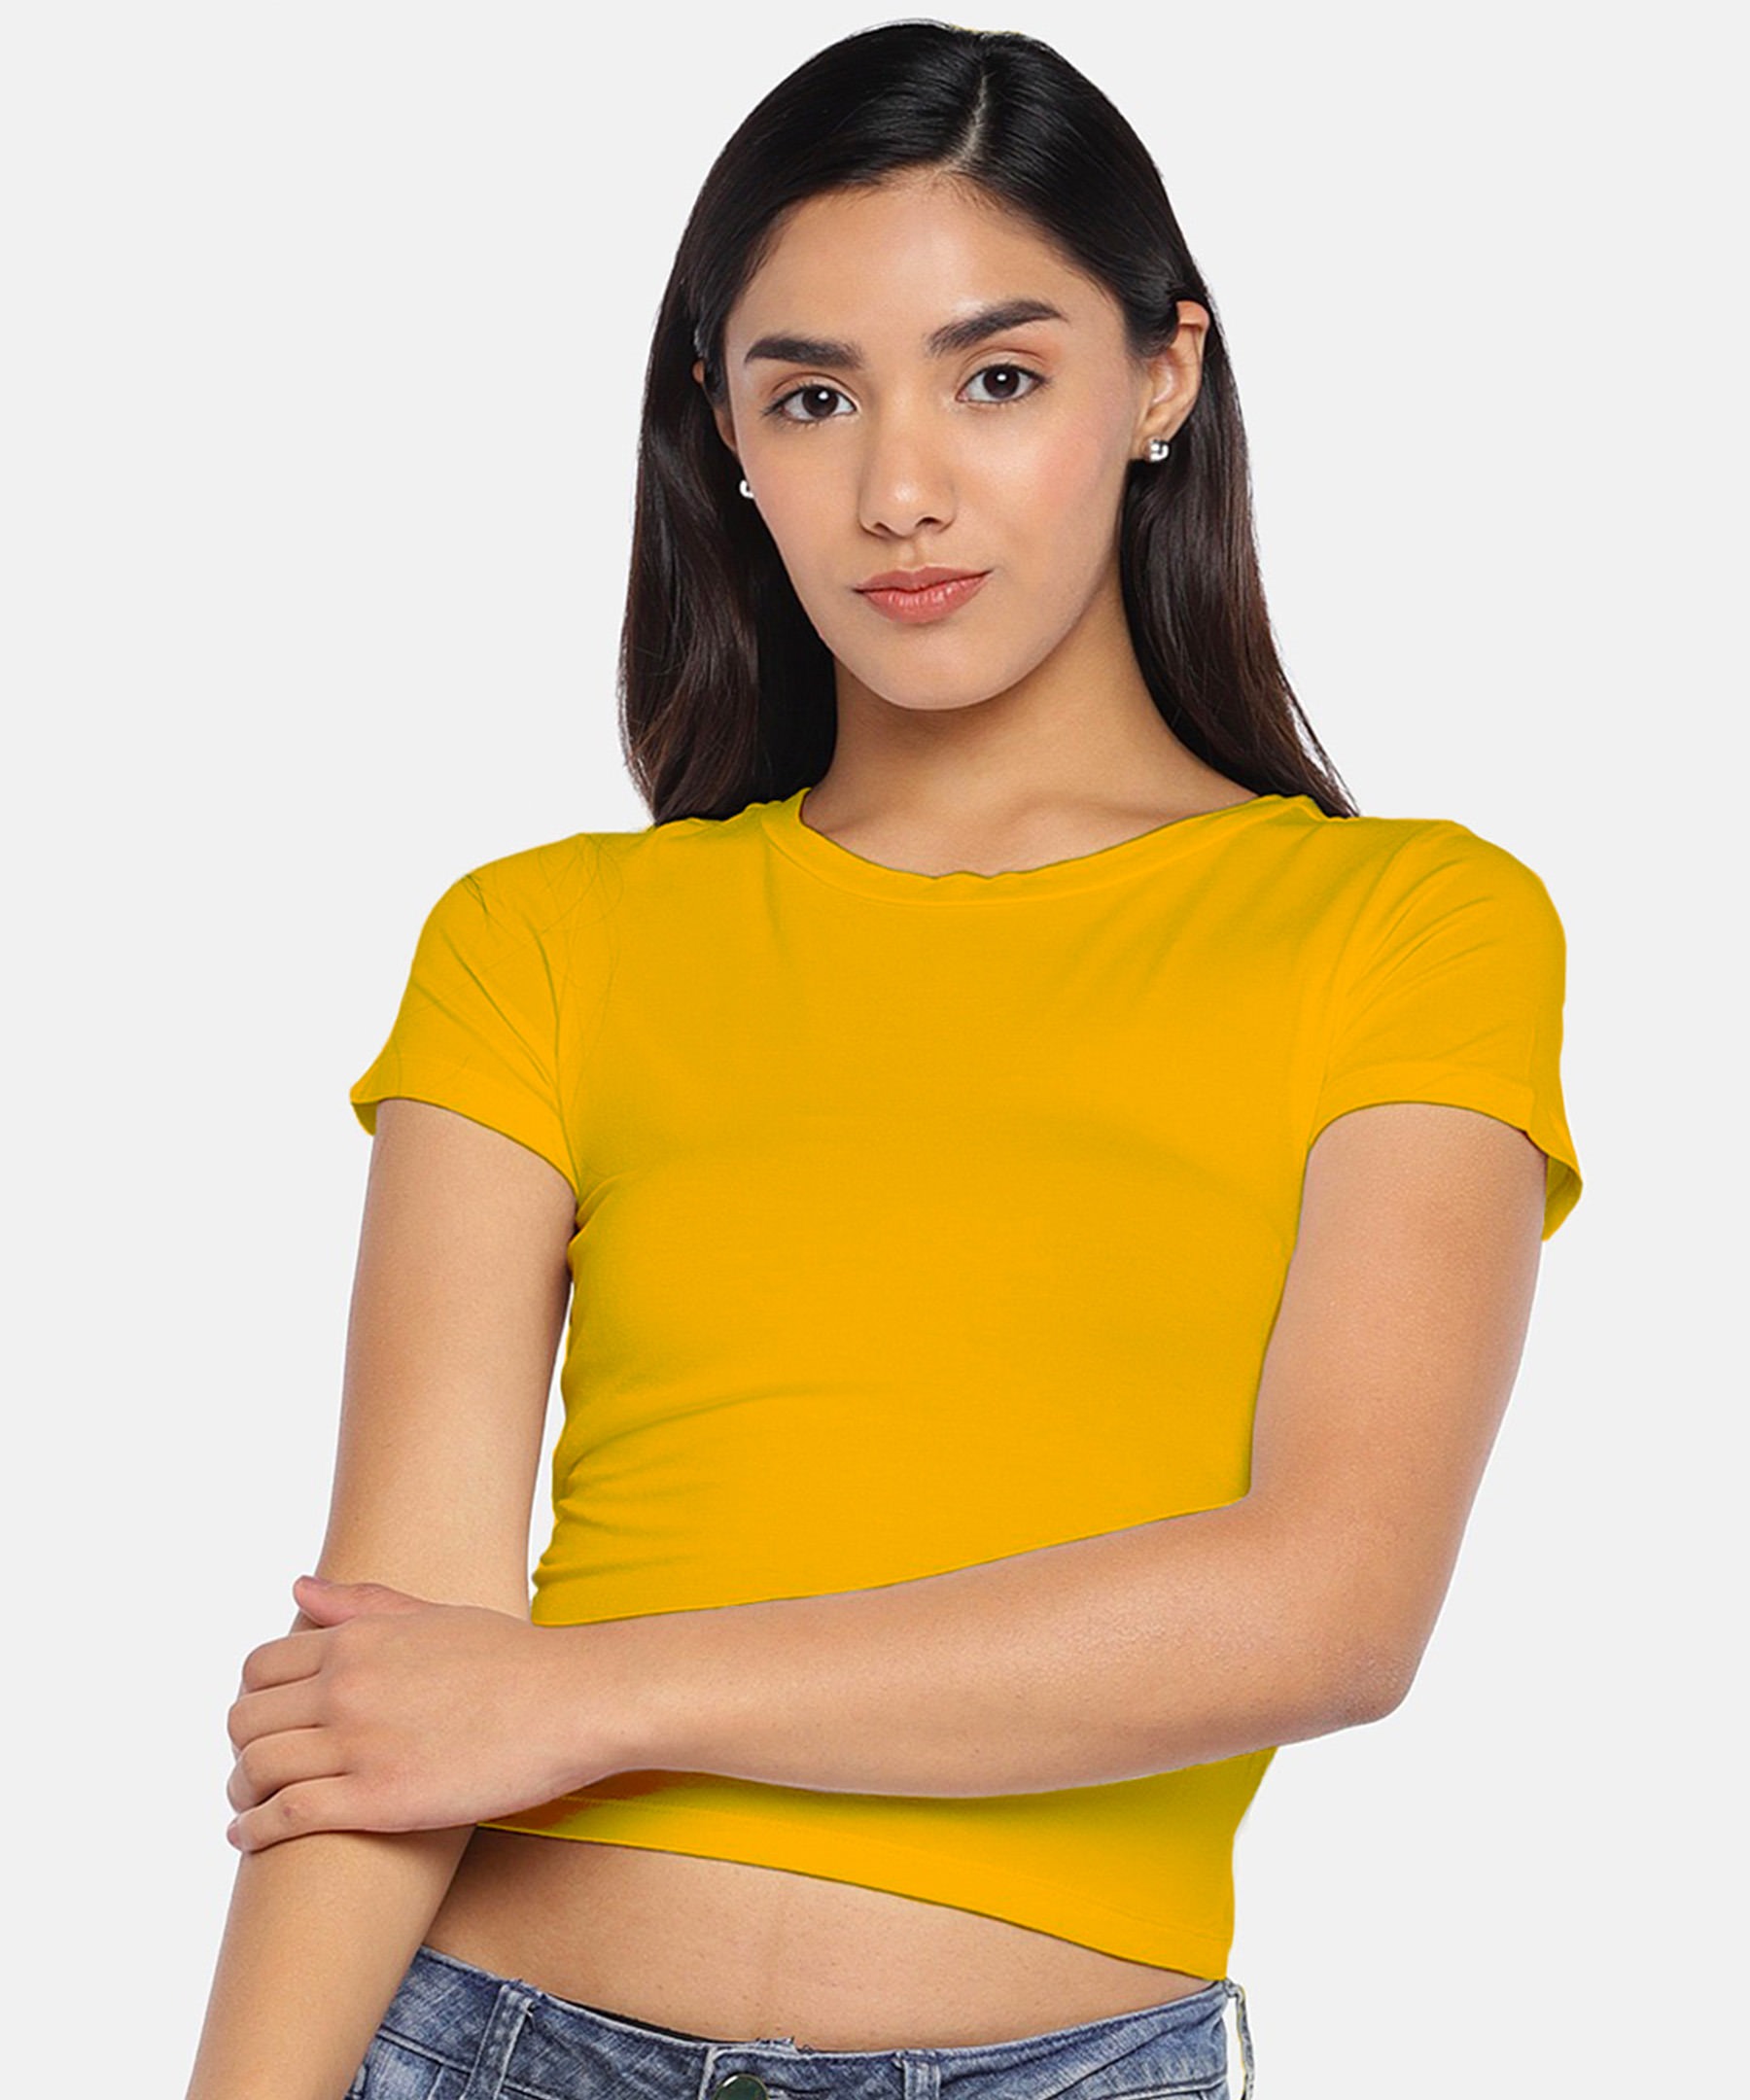 Golden yellow plain crop t shirt, T shirt crop tops